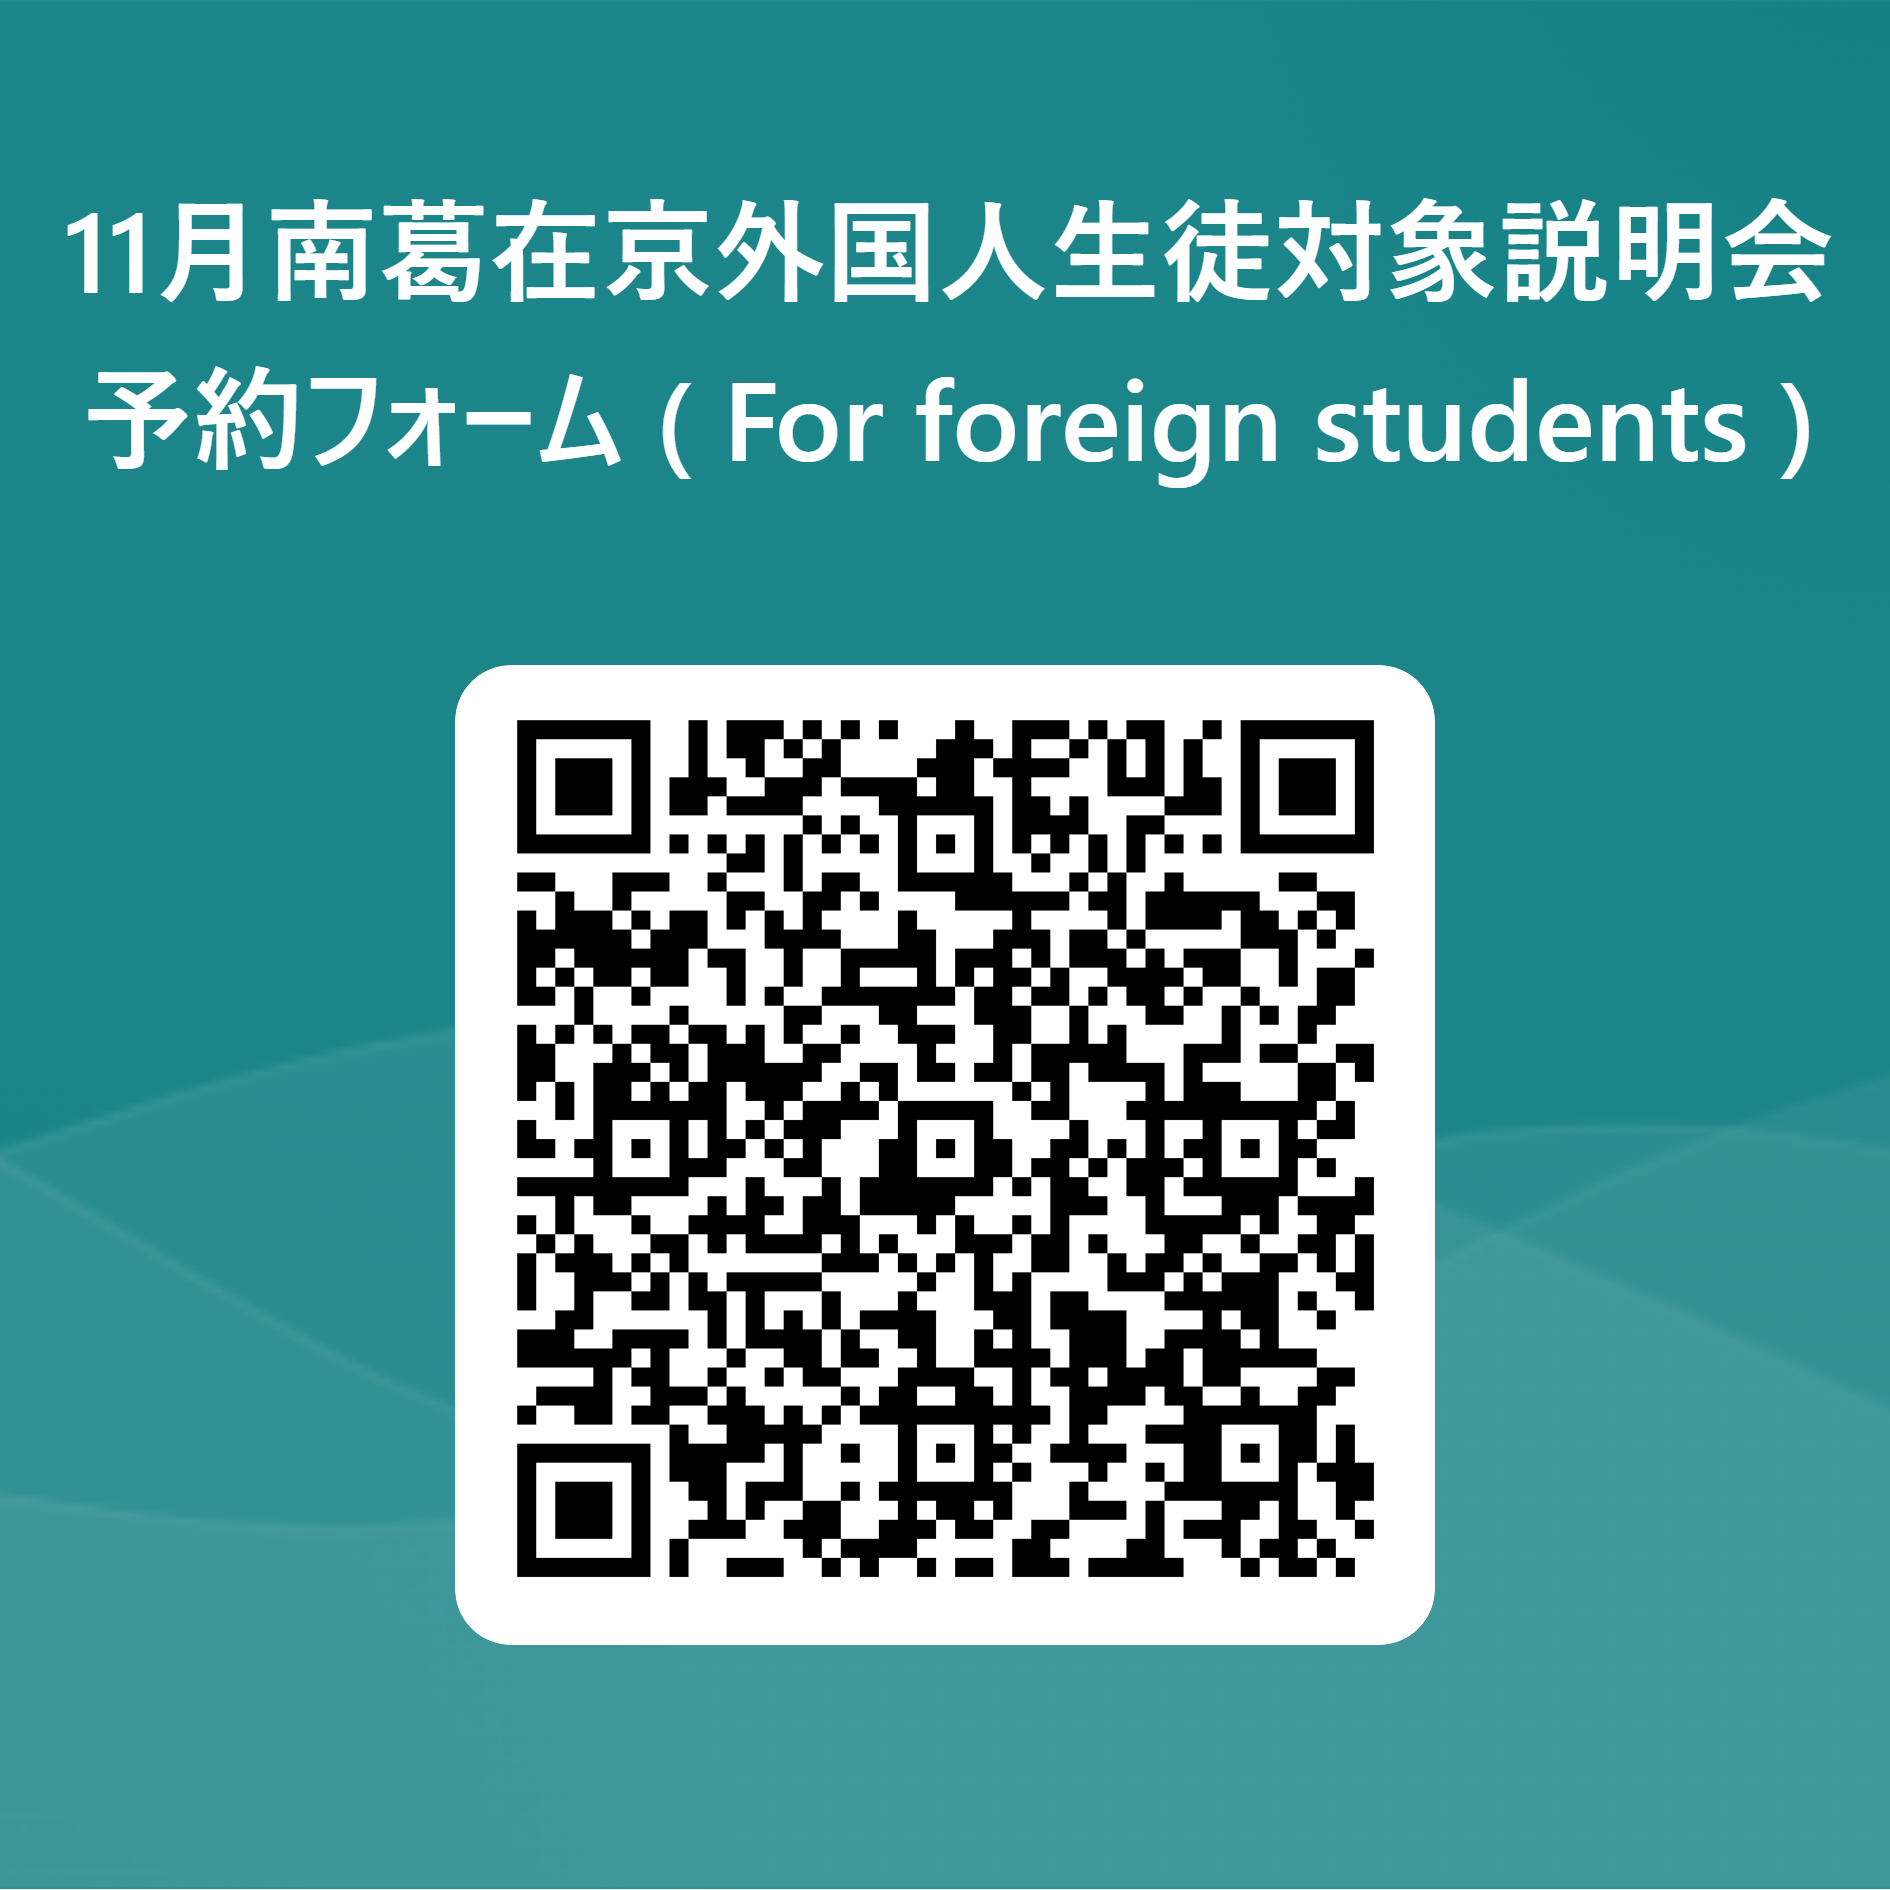 11月南葛在京外国人生徒対象説明会_予約フォーム ( For foreign students ) 用 QR コード